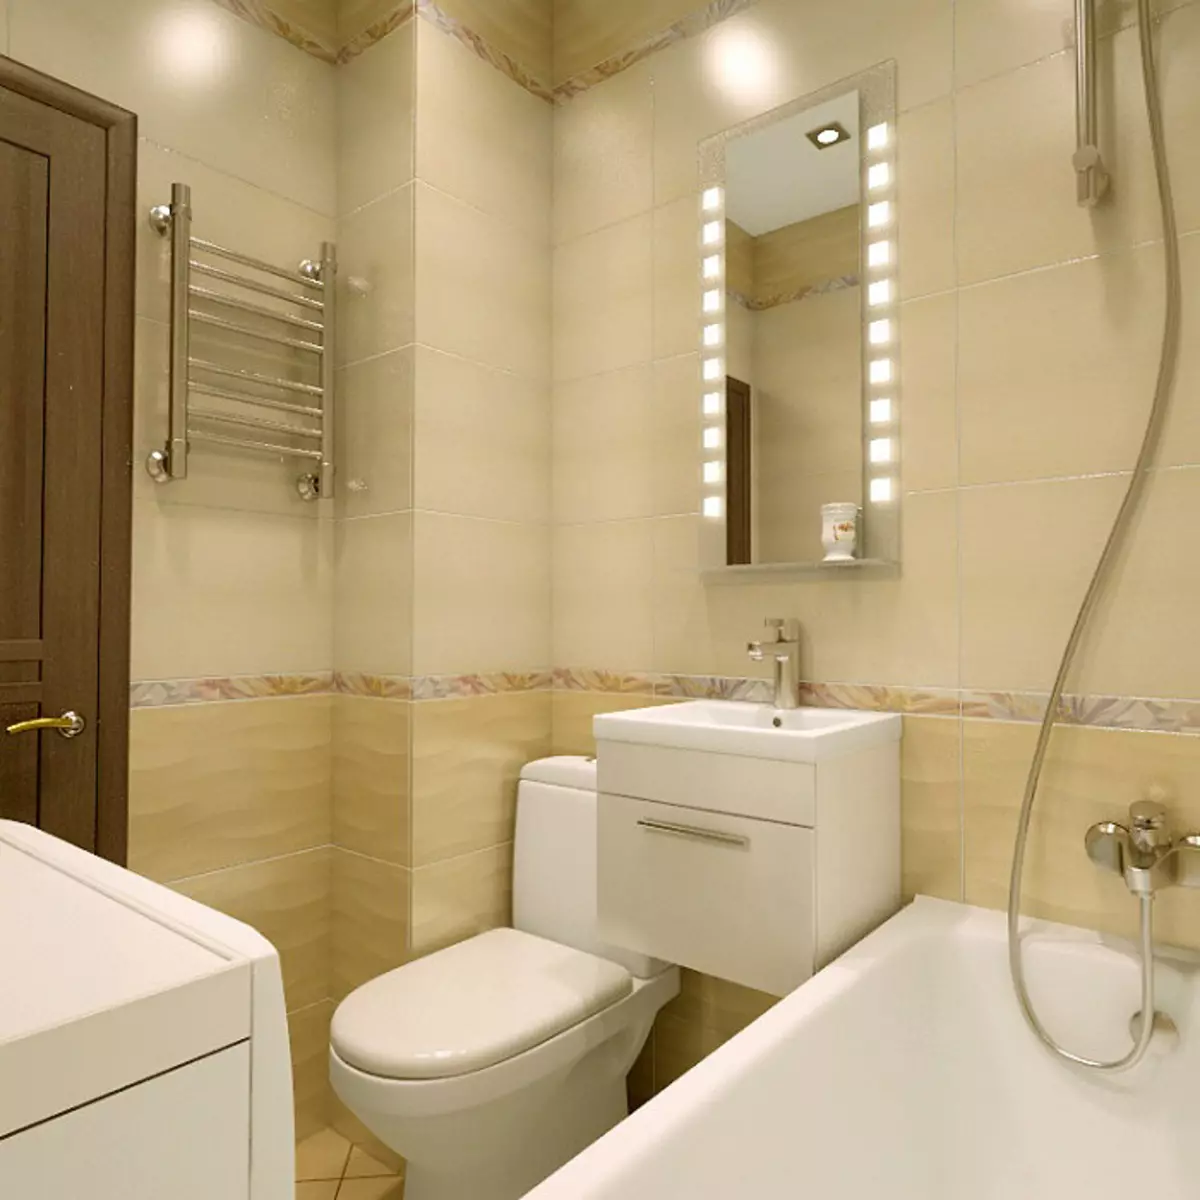 дизайн небольшой совмещенной ванной комнаты фото